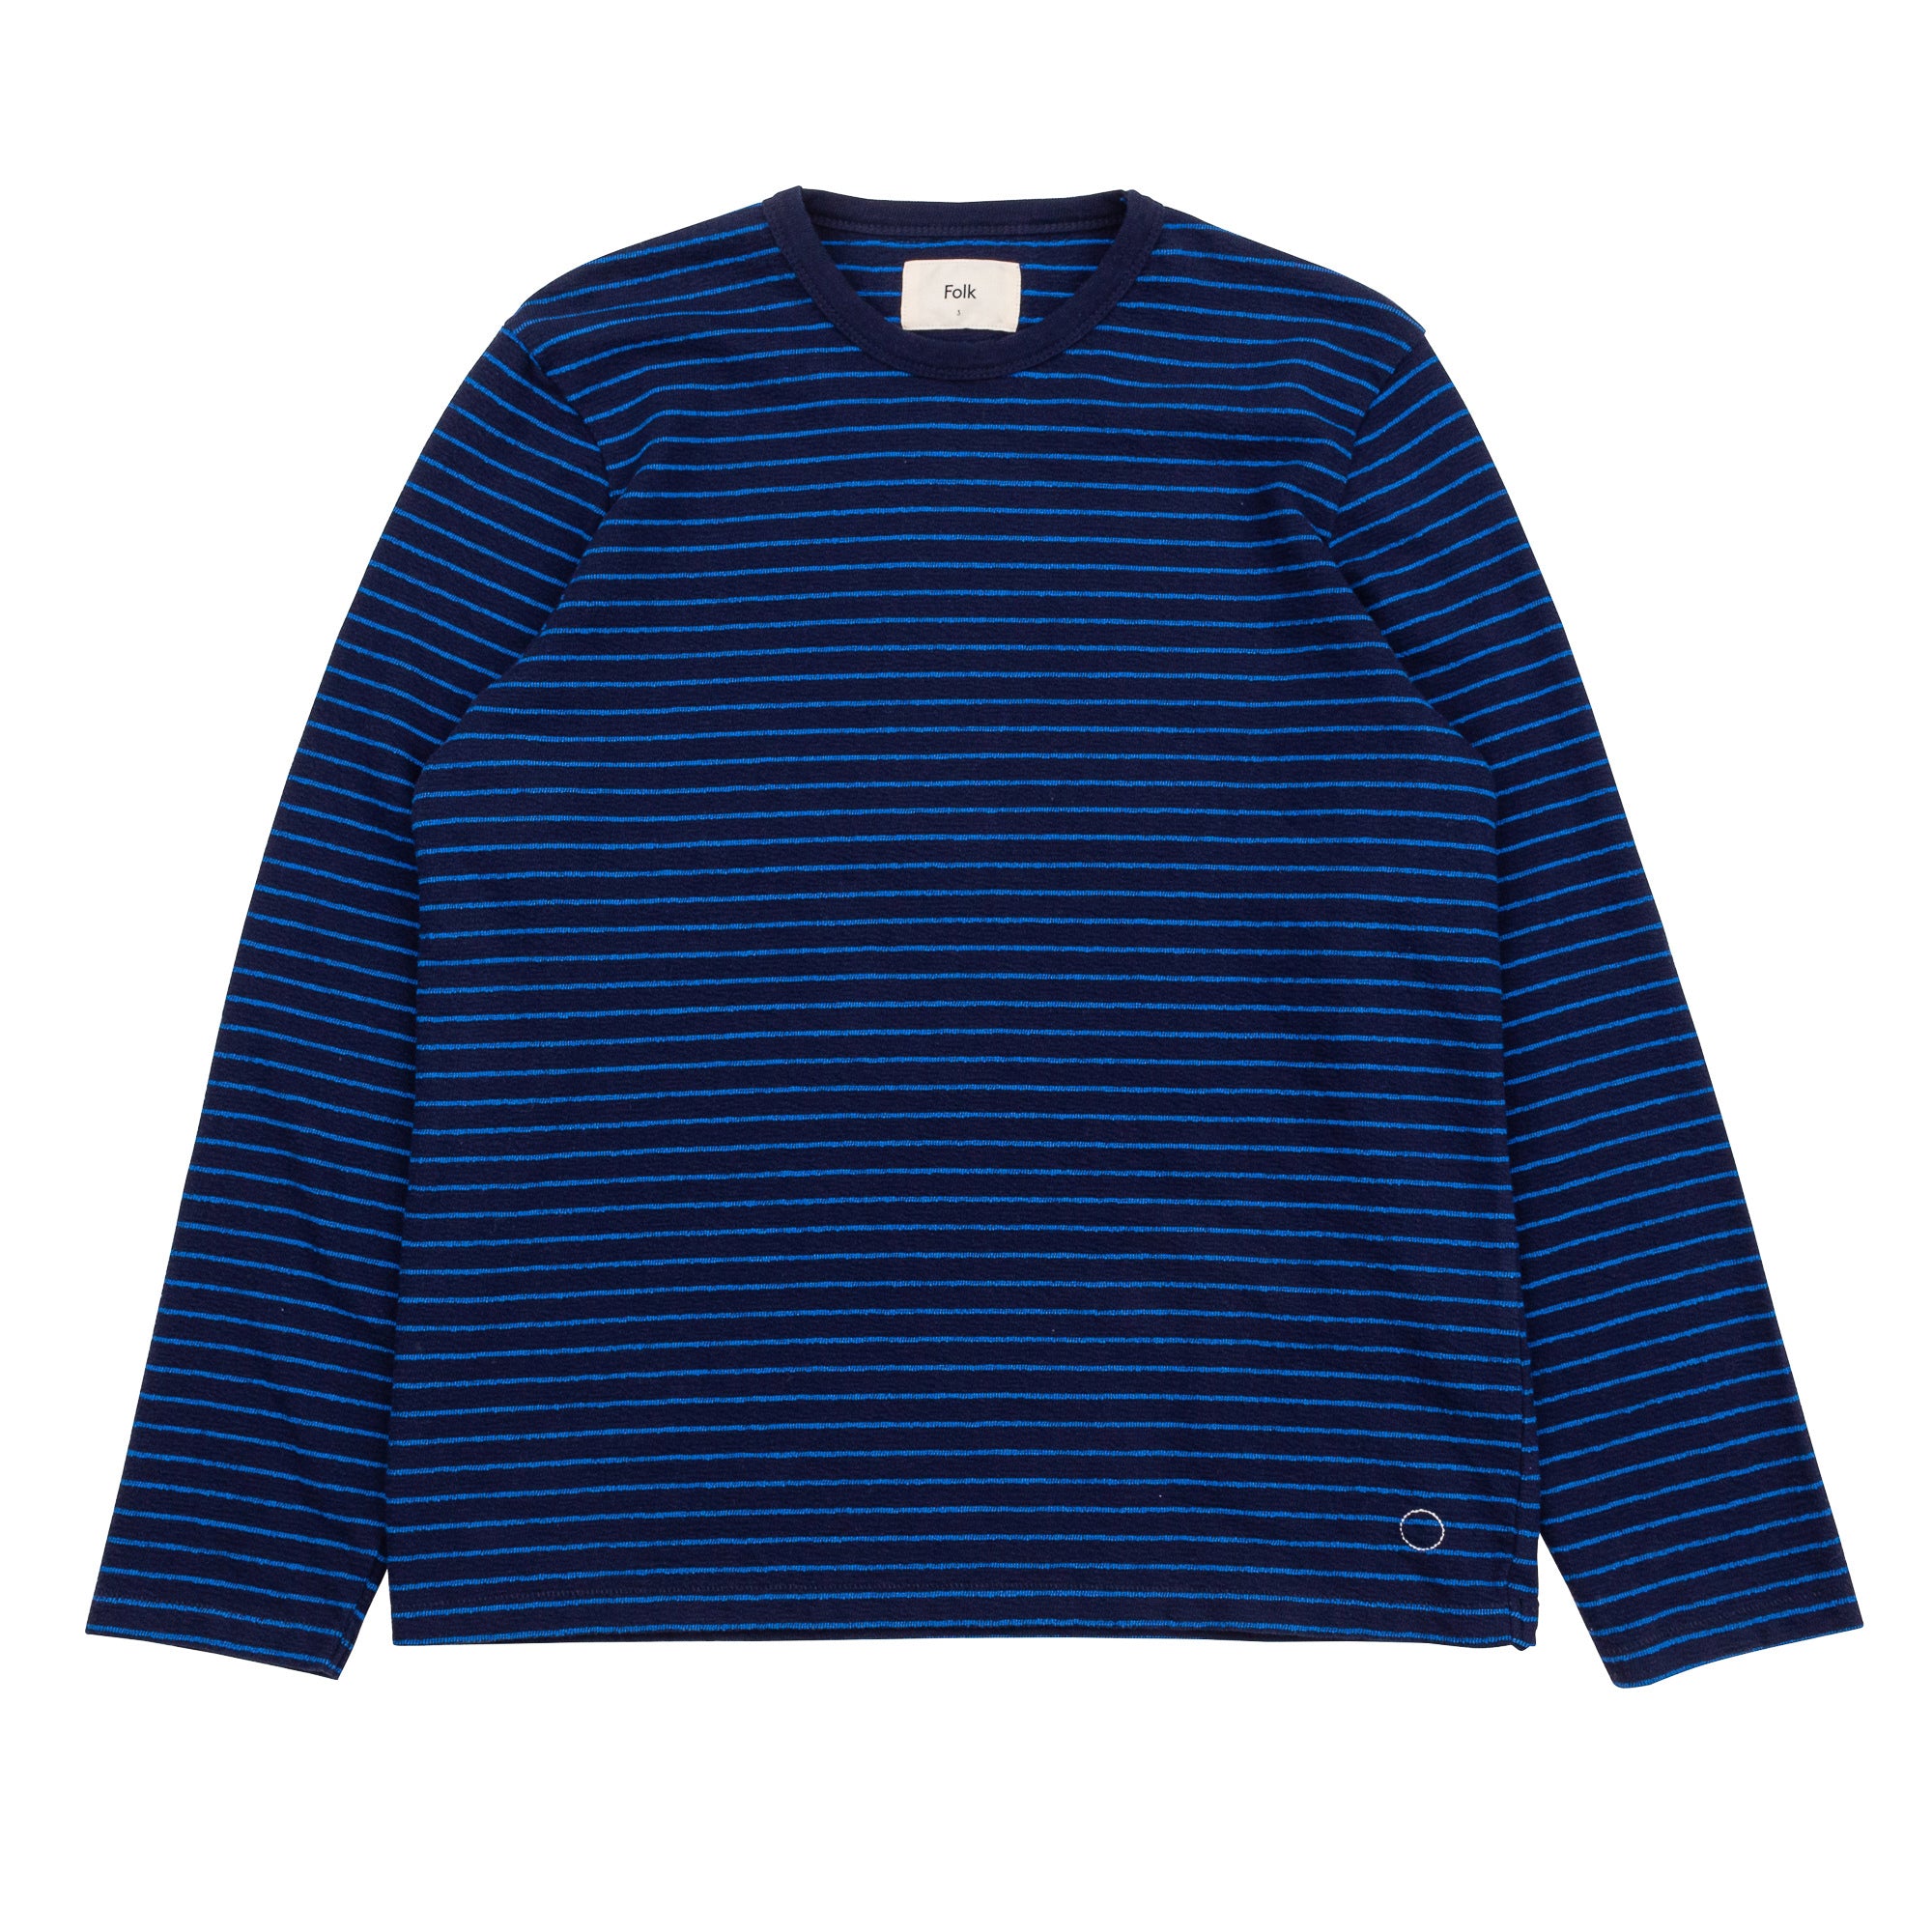 Folk | LS Textured Stripe Tee - Navy/ Blue